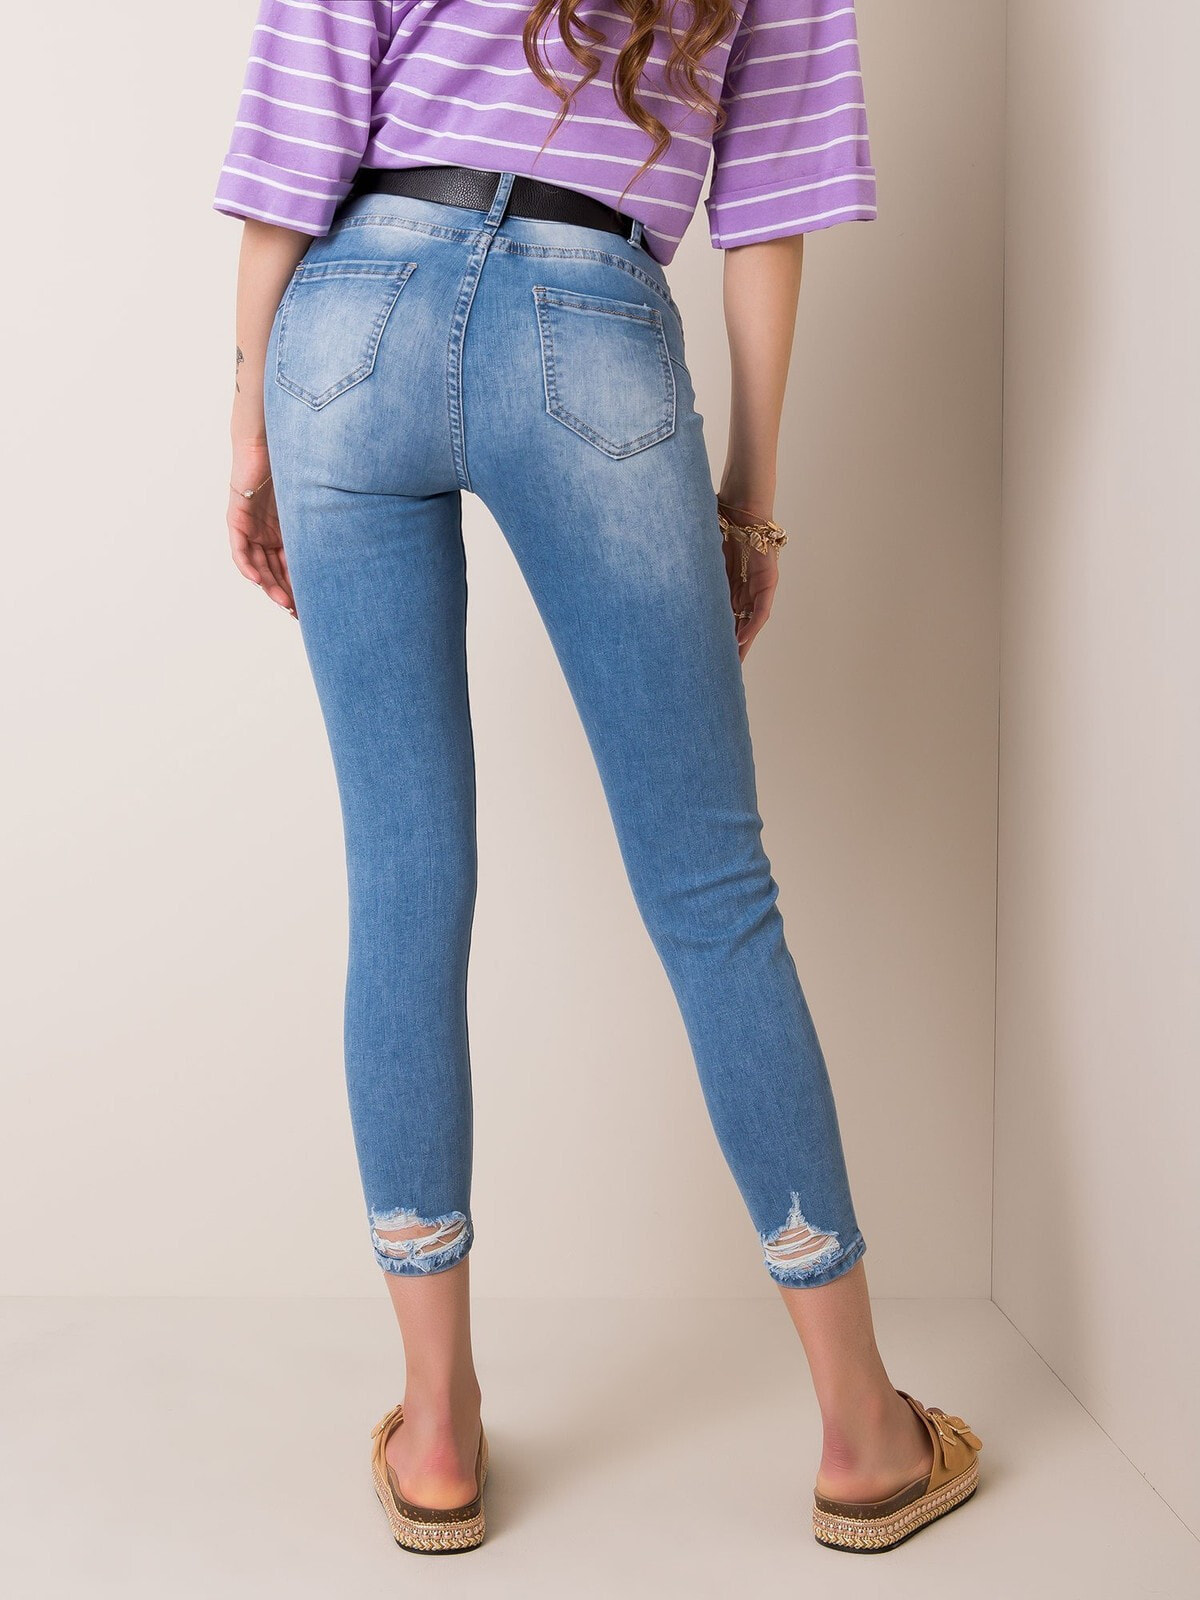 Женские джинсы скинни с высокой посадкой укороченные голубые Factory Price